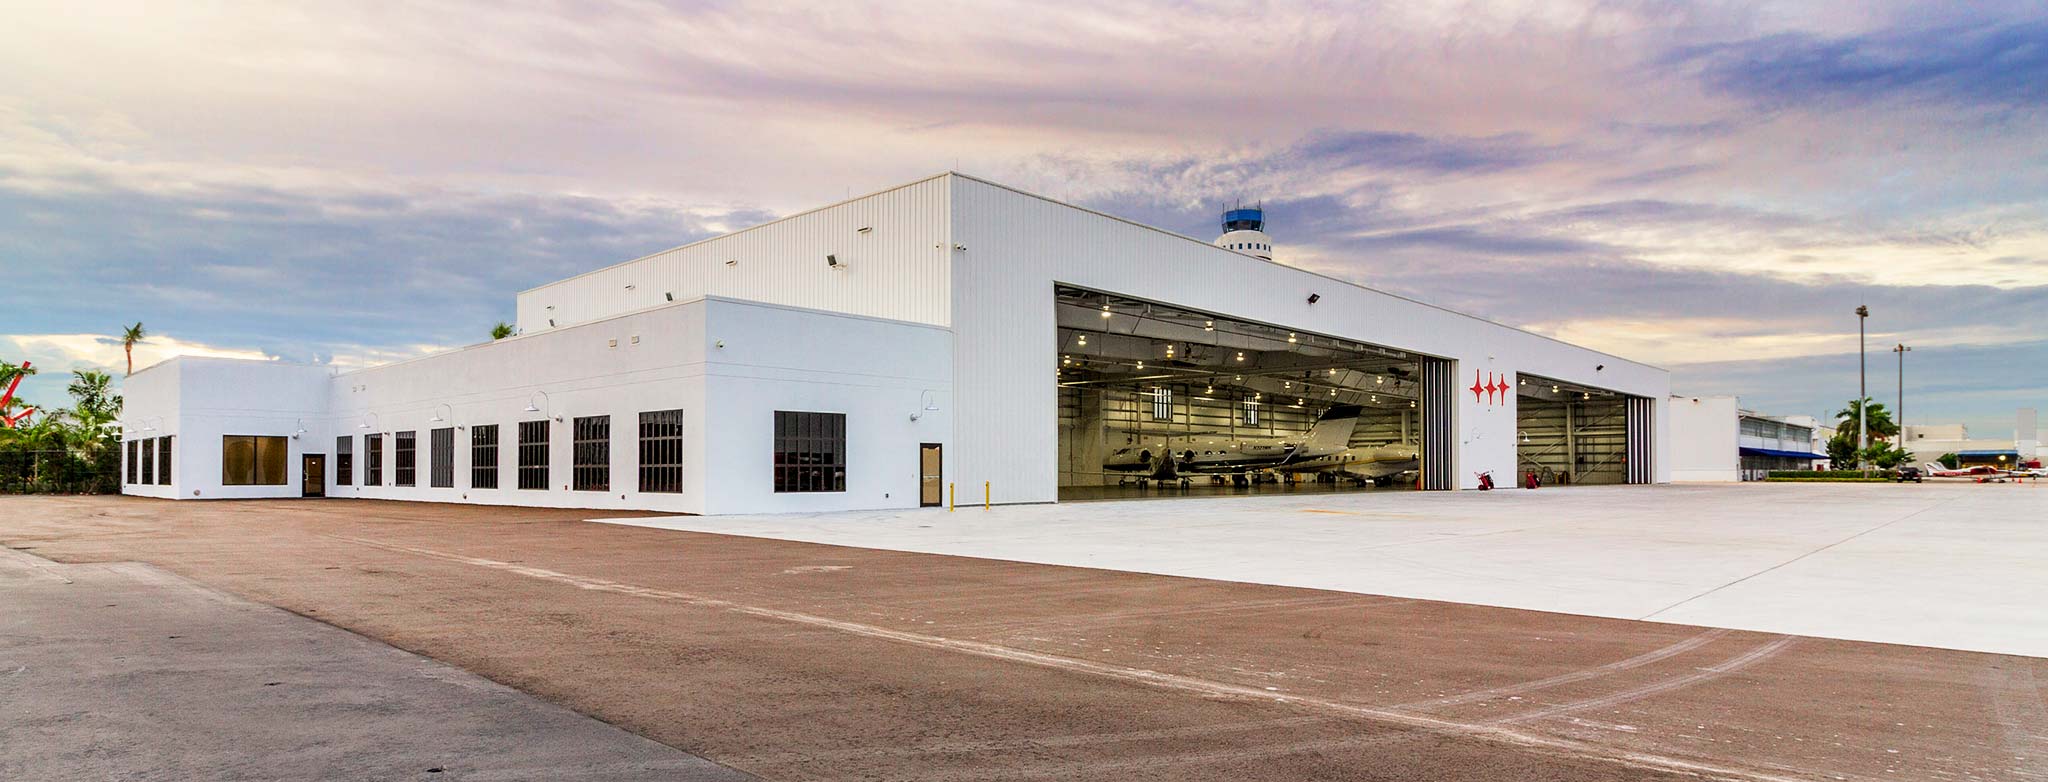 Orion Jet Center Hangar